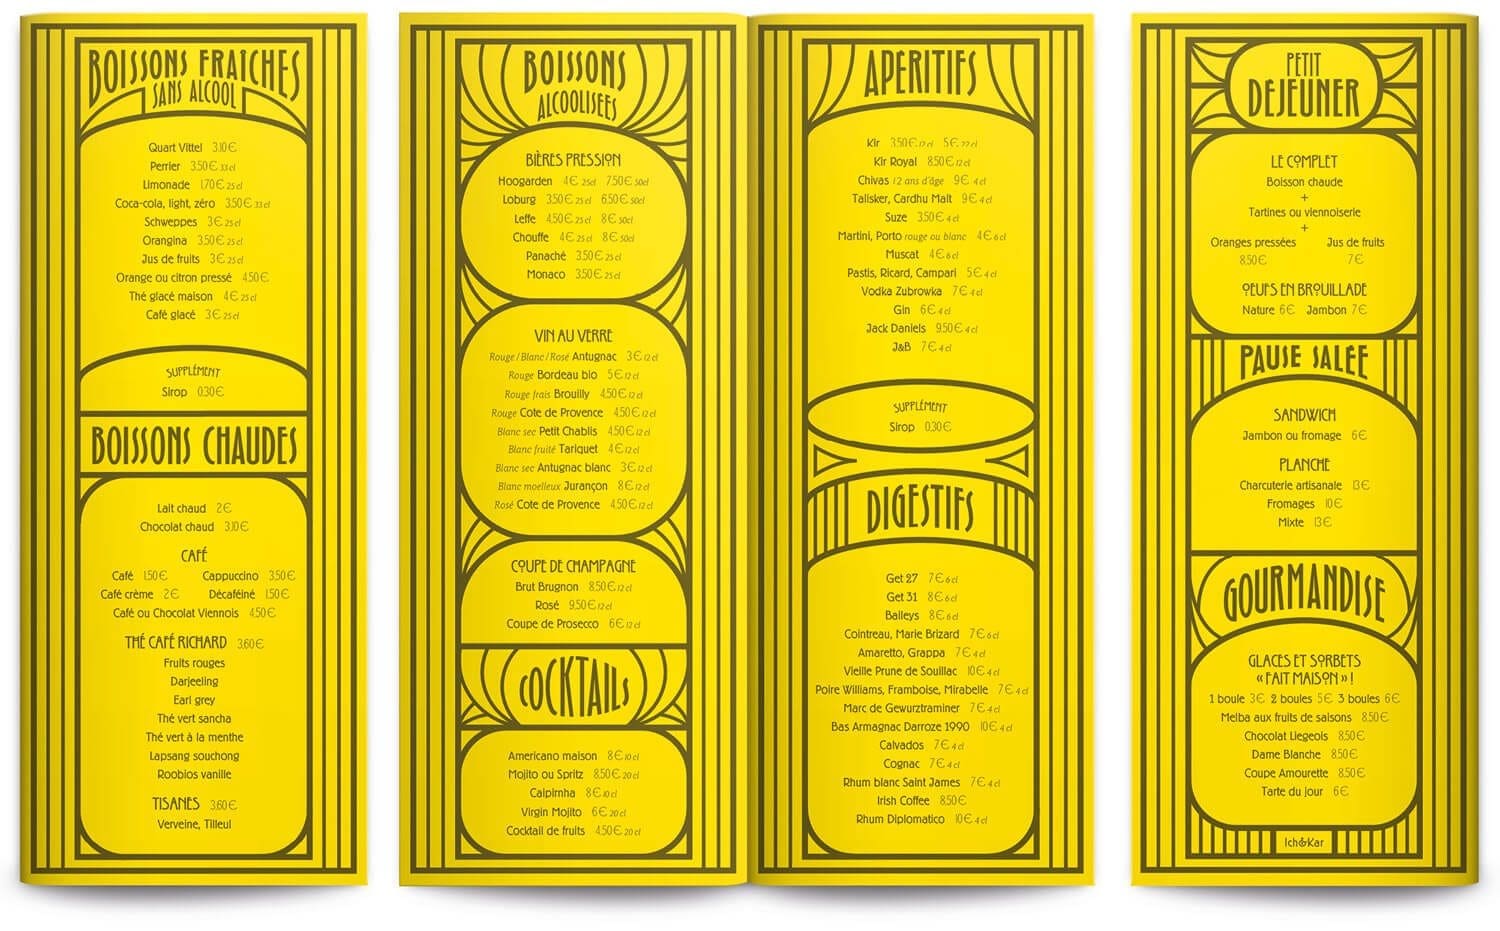 Ichetkar réalise une carte boissons pour le restaurant l'Amourette, graphisme art deco sur papier jaune